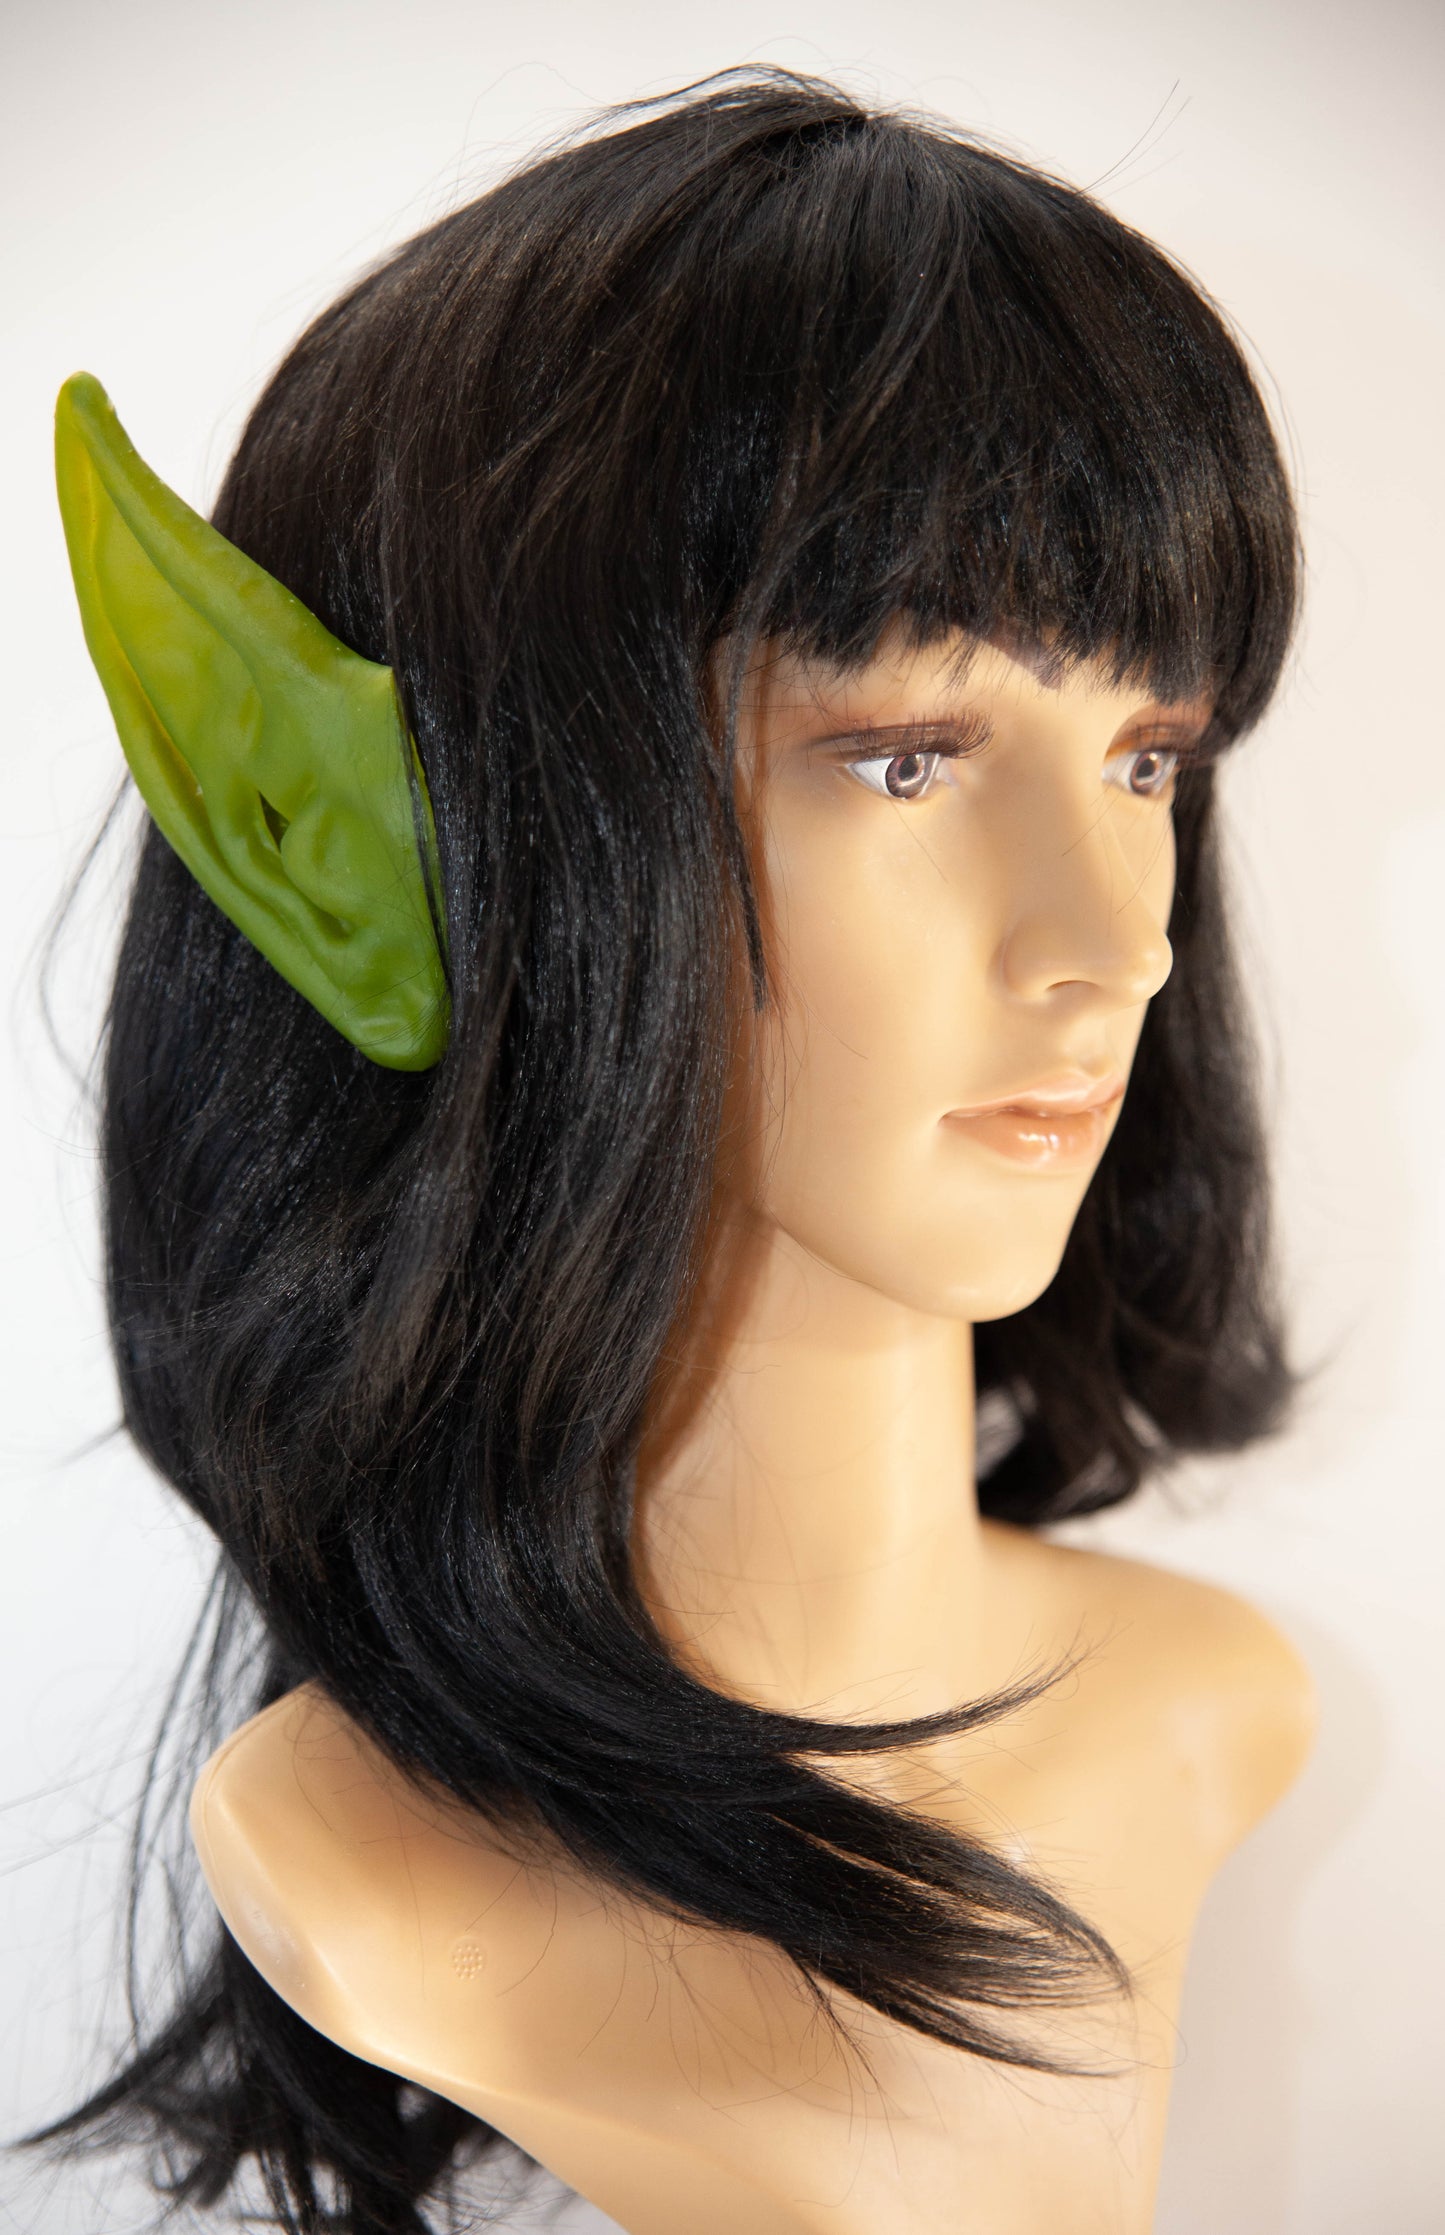 Green Elf Ears